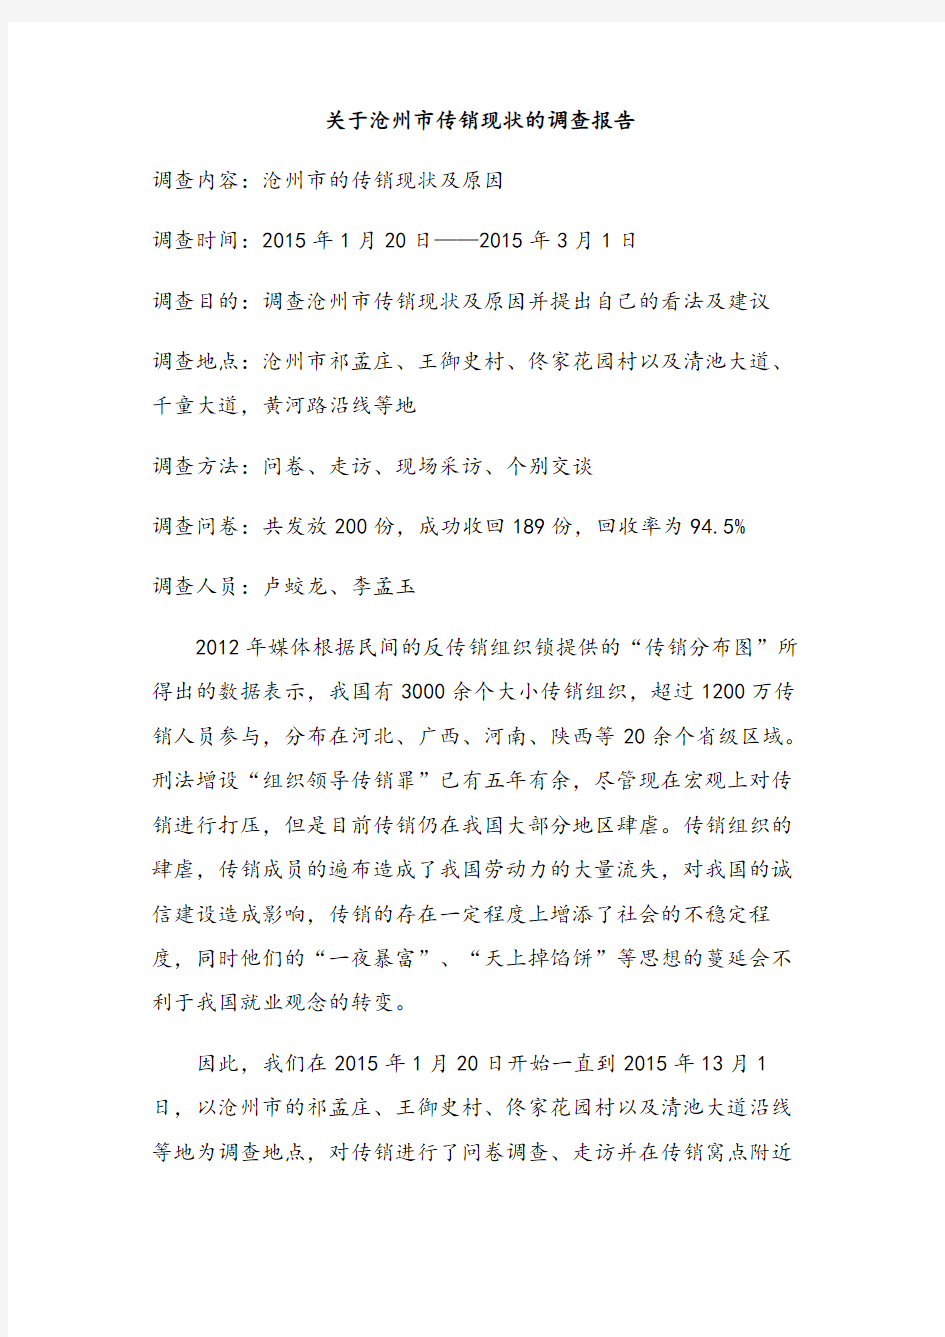 关于沧州市传销现状的调查报告